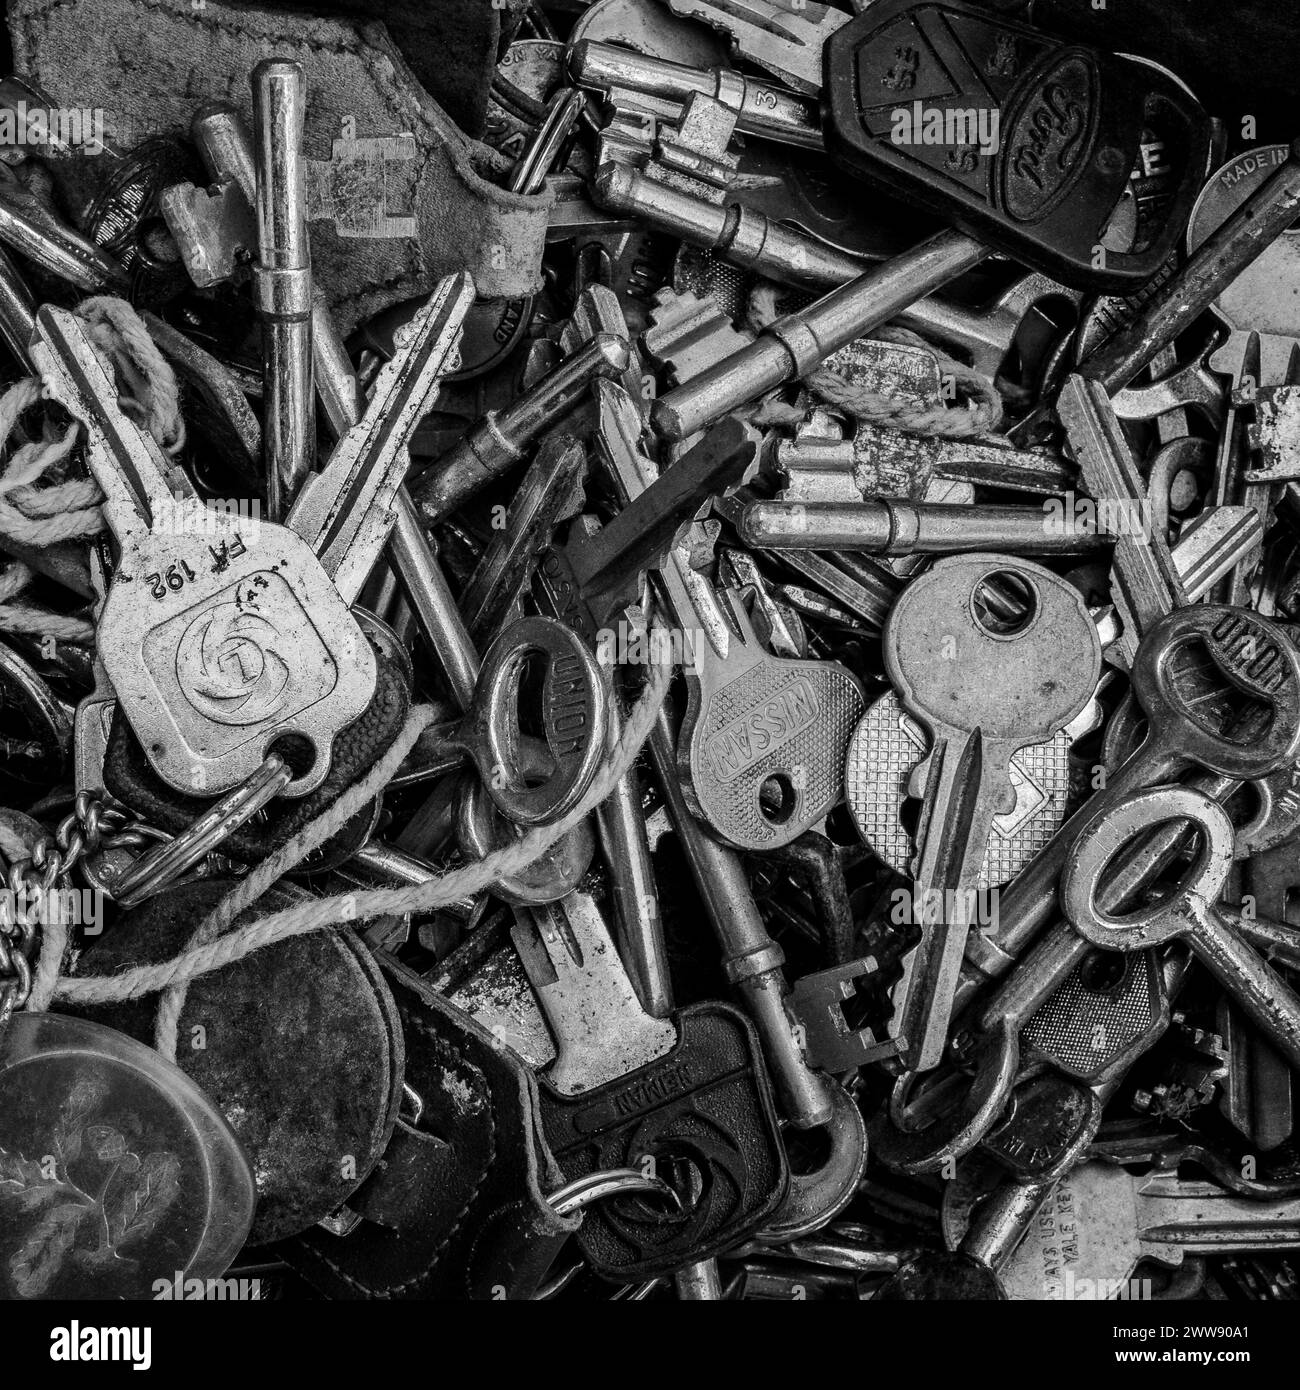 Gros plan d'un plateau de vieilles clés de voiture, clés de maison et clés antiques. Métal brillant, métal rouillé. Concept - serrures, sécurité, sûreté, portes. Noir et blanc Banque D'Images